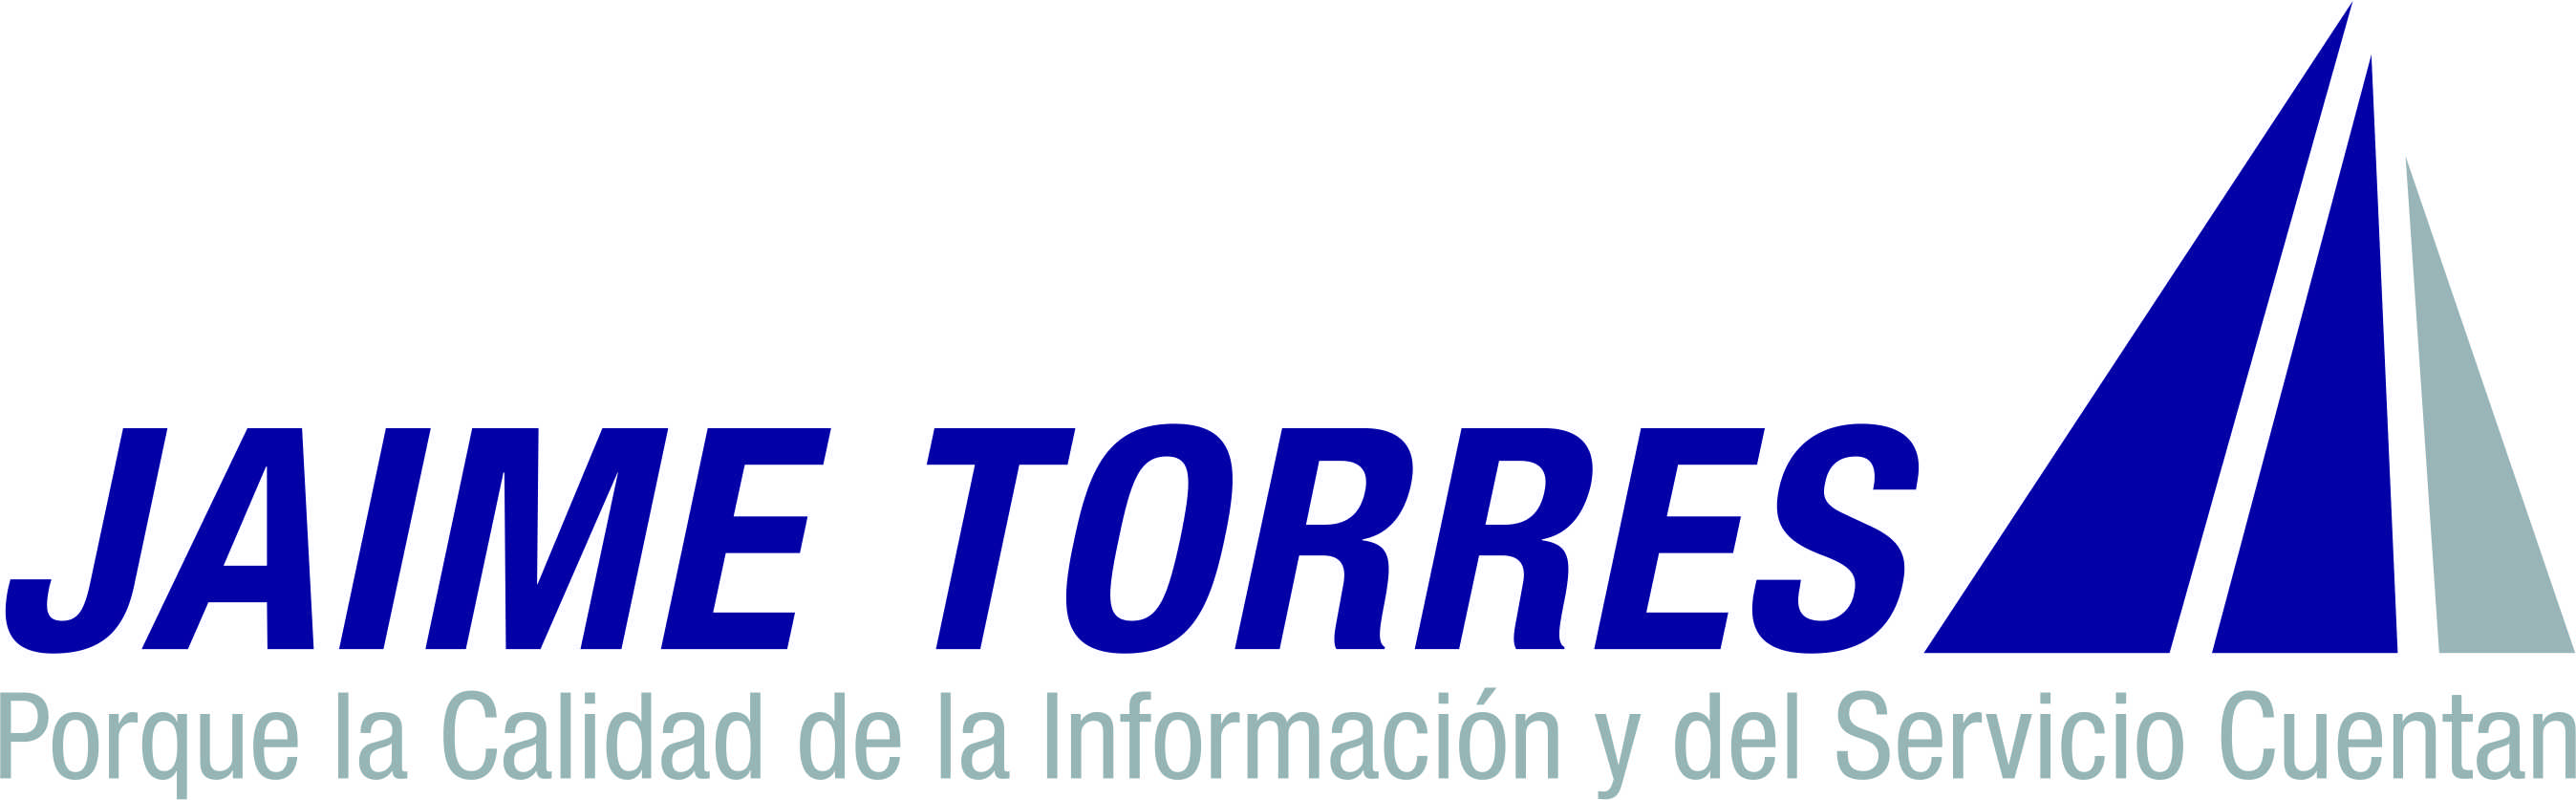 Jaime Torres Logo